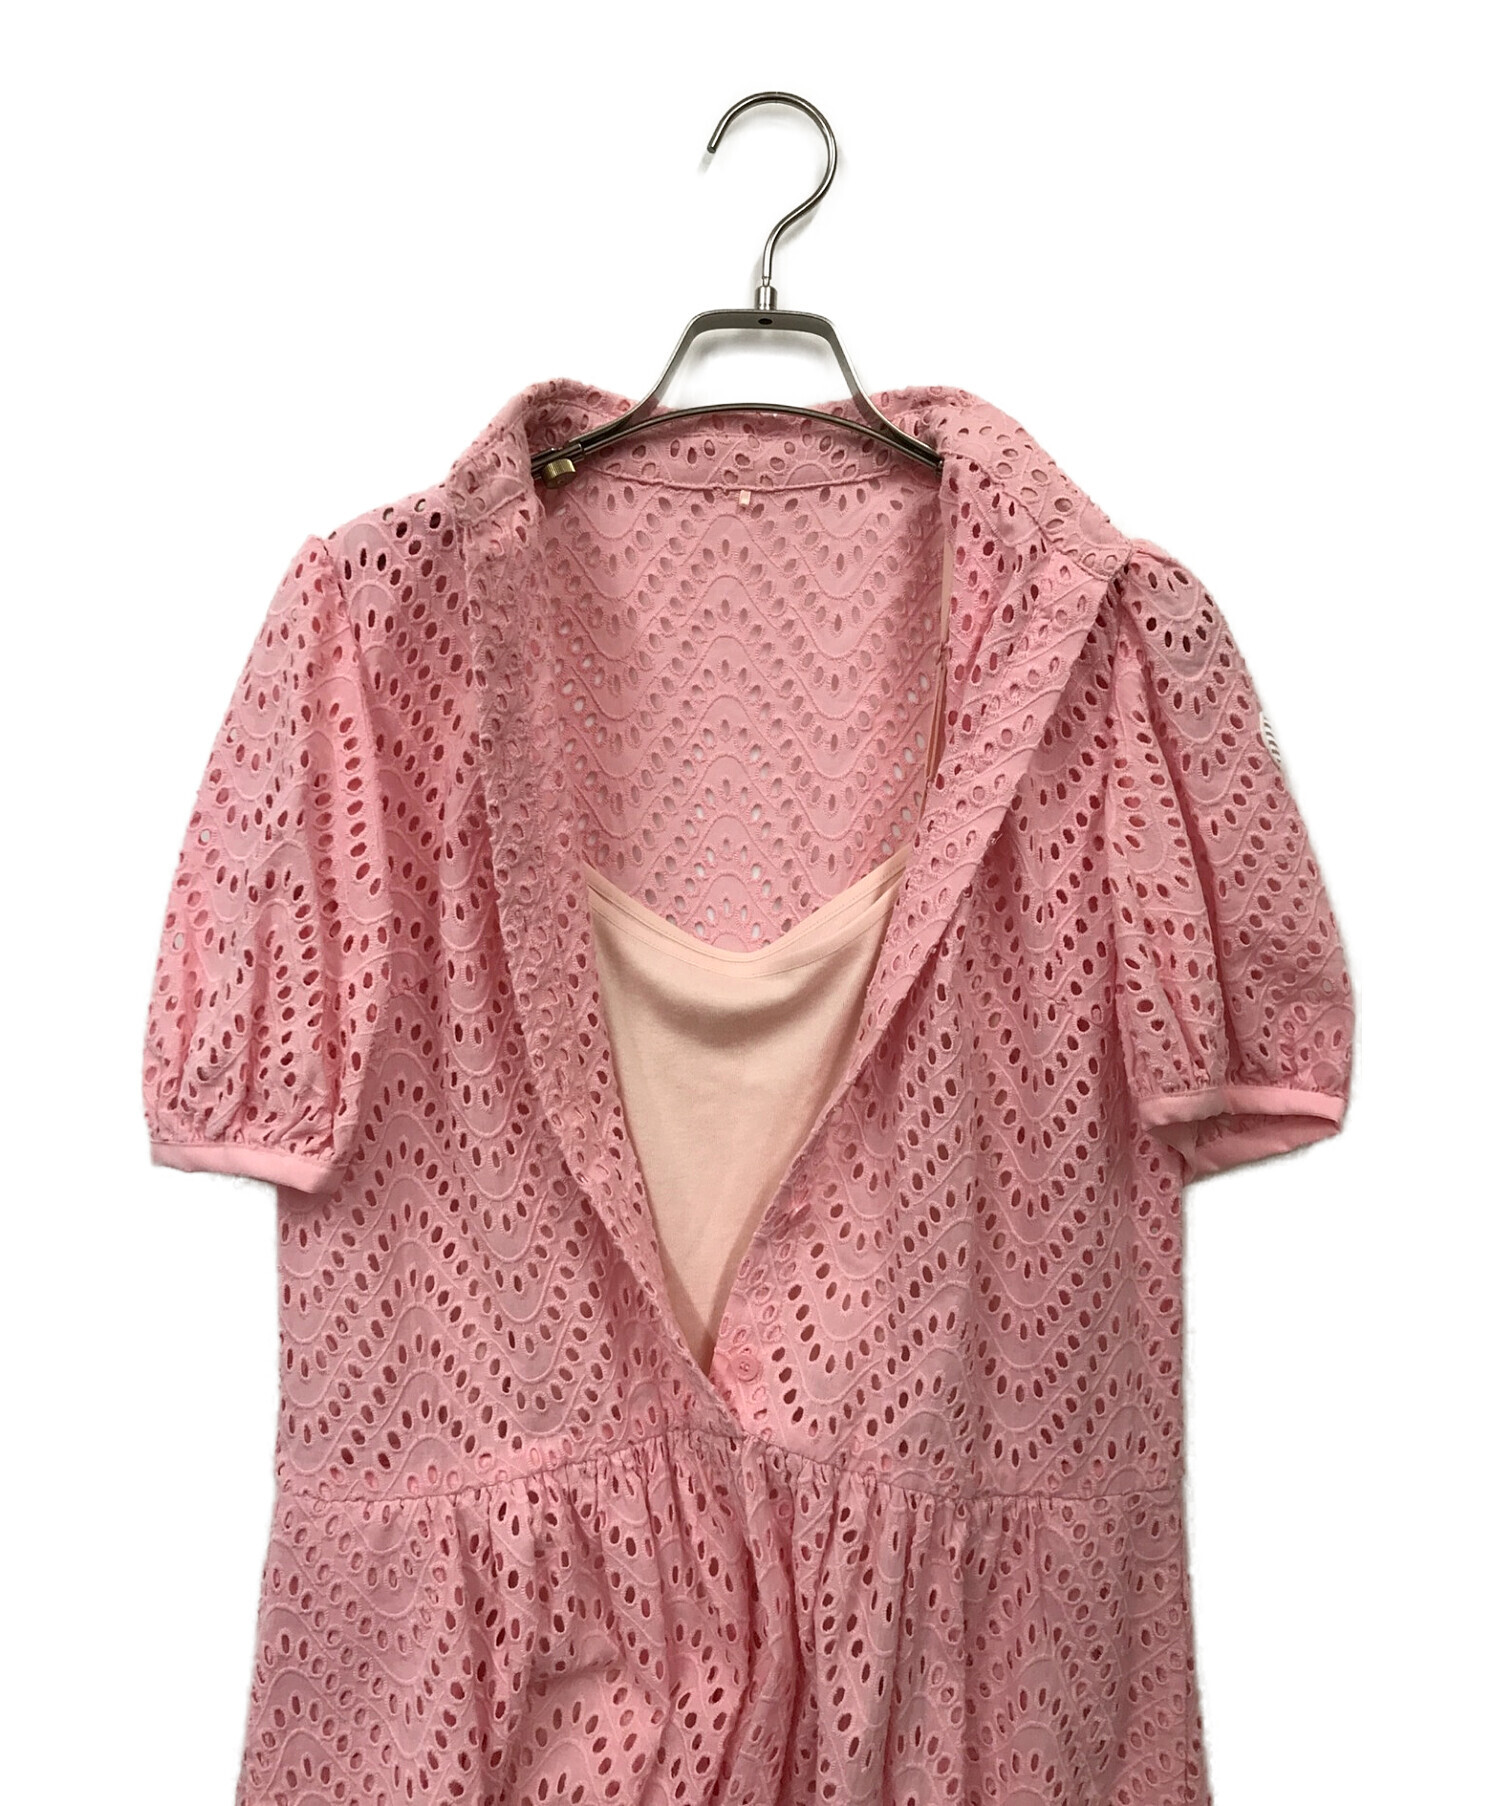 BORDERS at BALCONY (ボーダーズアットバルコニー) LACE SHIRT DRESS ピンク サイズ:36